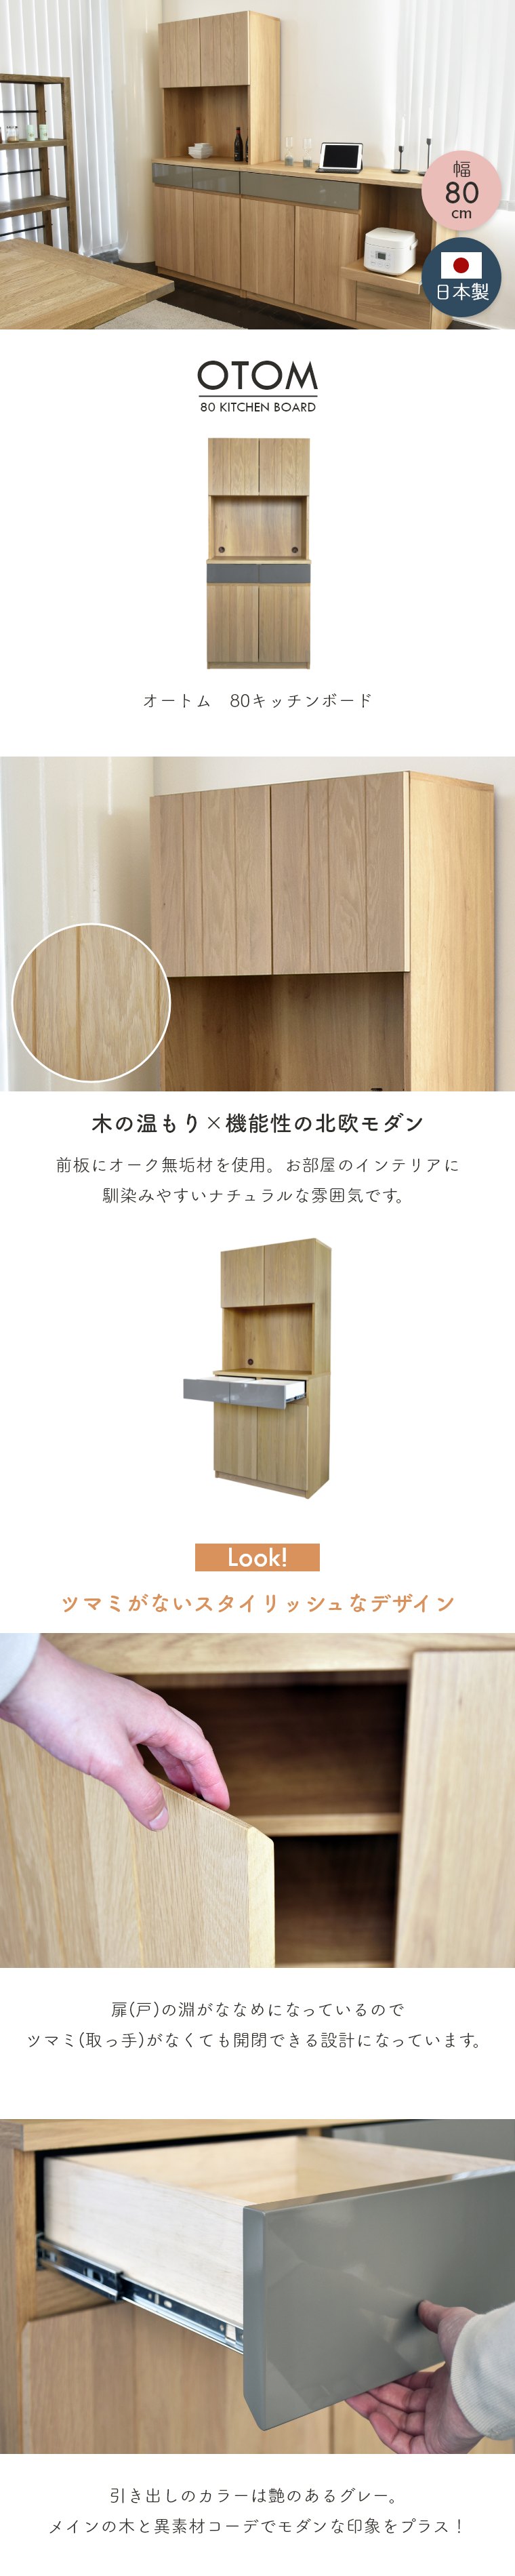 キッチンボード キッチン収納 オートム 幅80cm ガルト 日本製 国産 木製